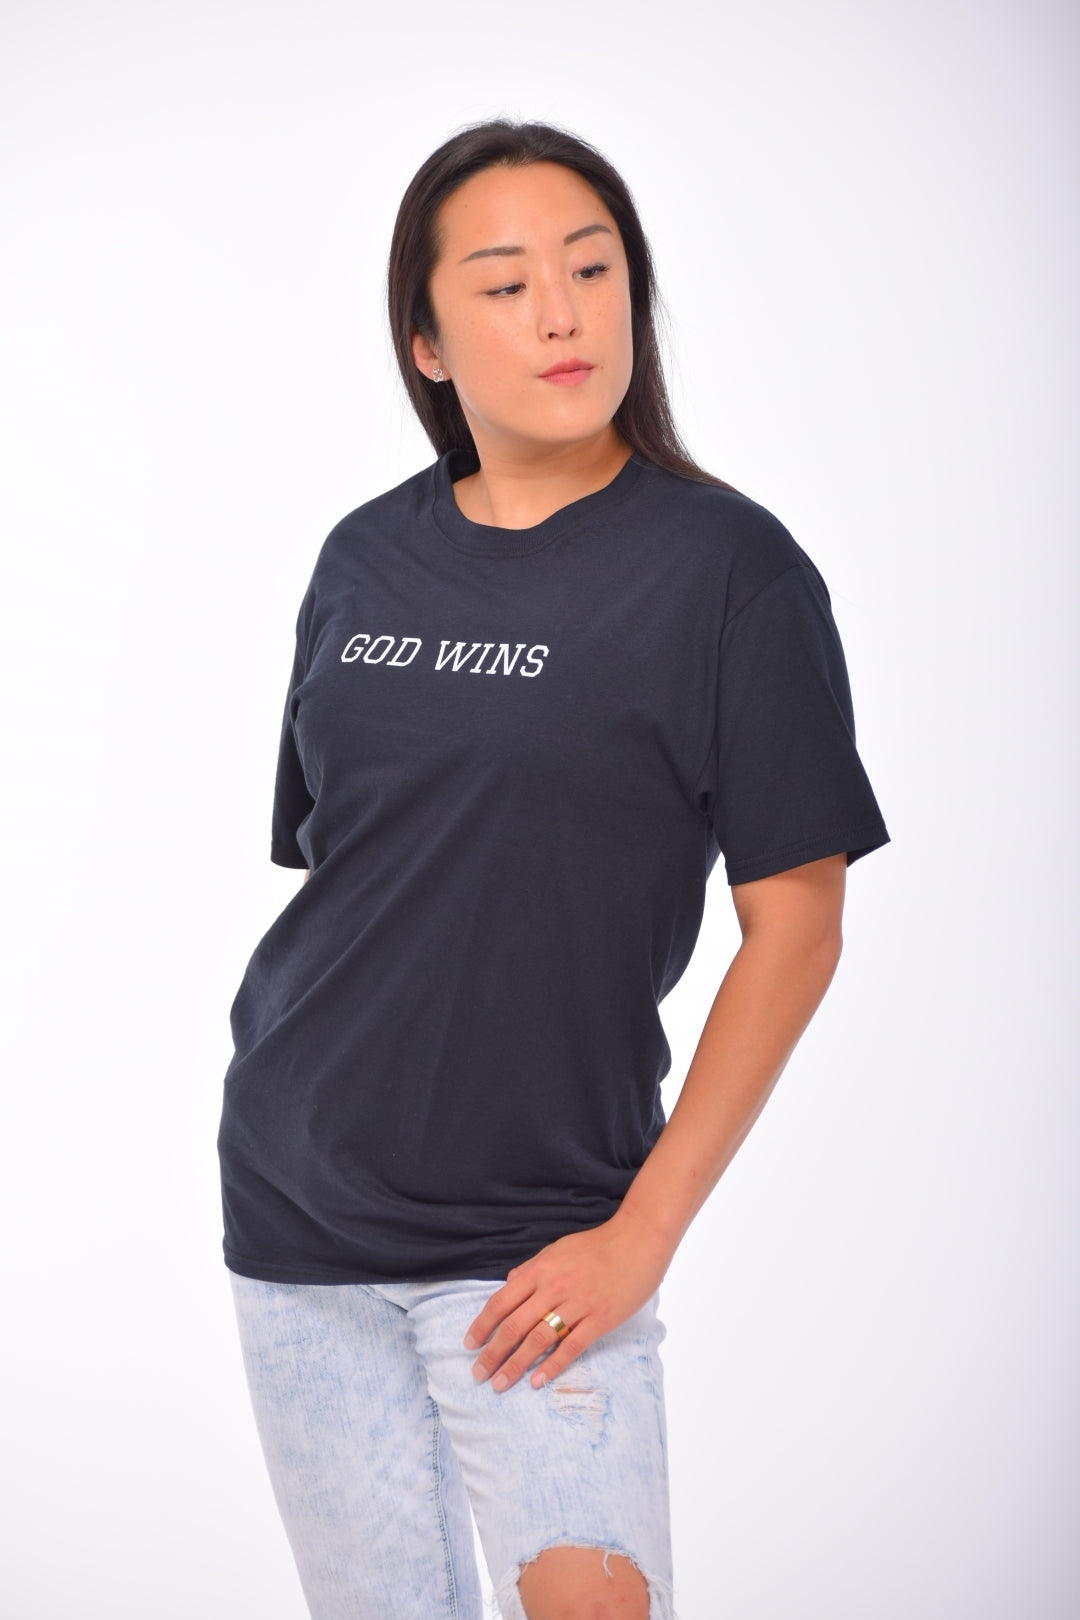 God Wins Unisex Classic T-Shirt